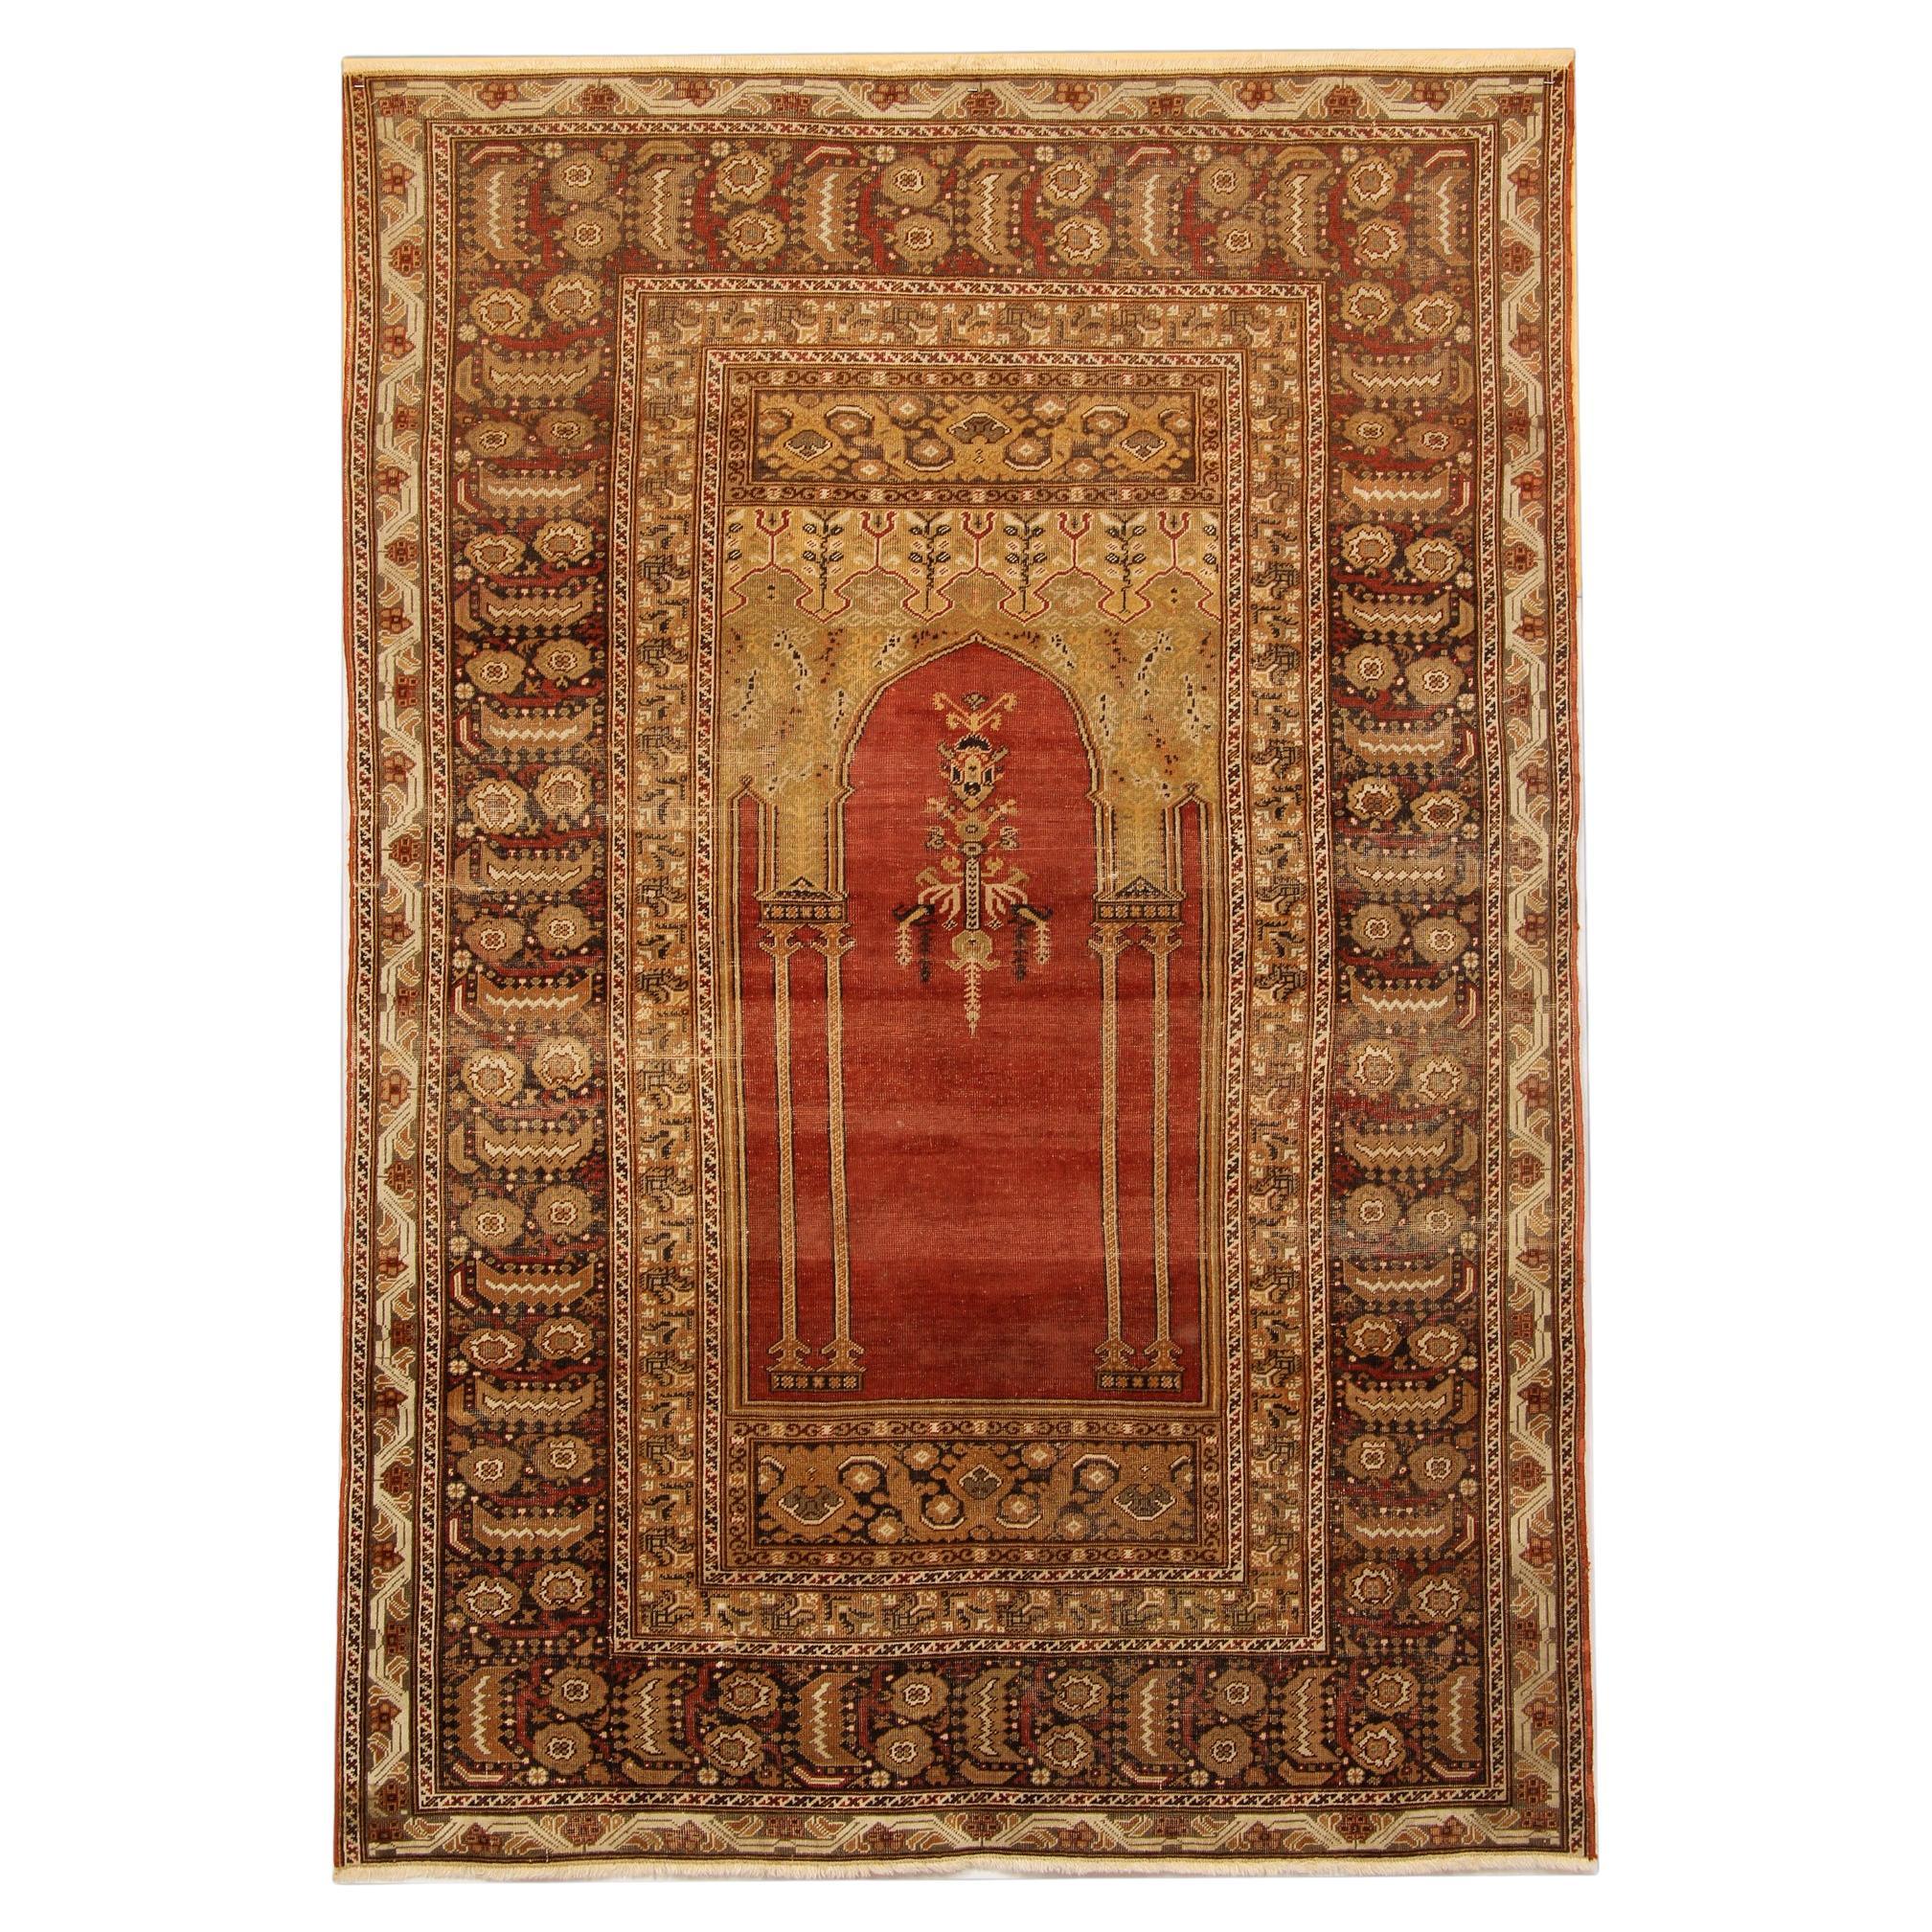 Tapis turcs anciens rouges, tapis d'Anatolie, tapis de salon de prière Mihrabi CHR20